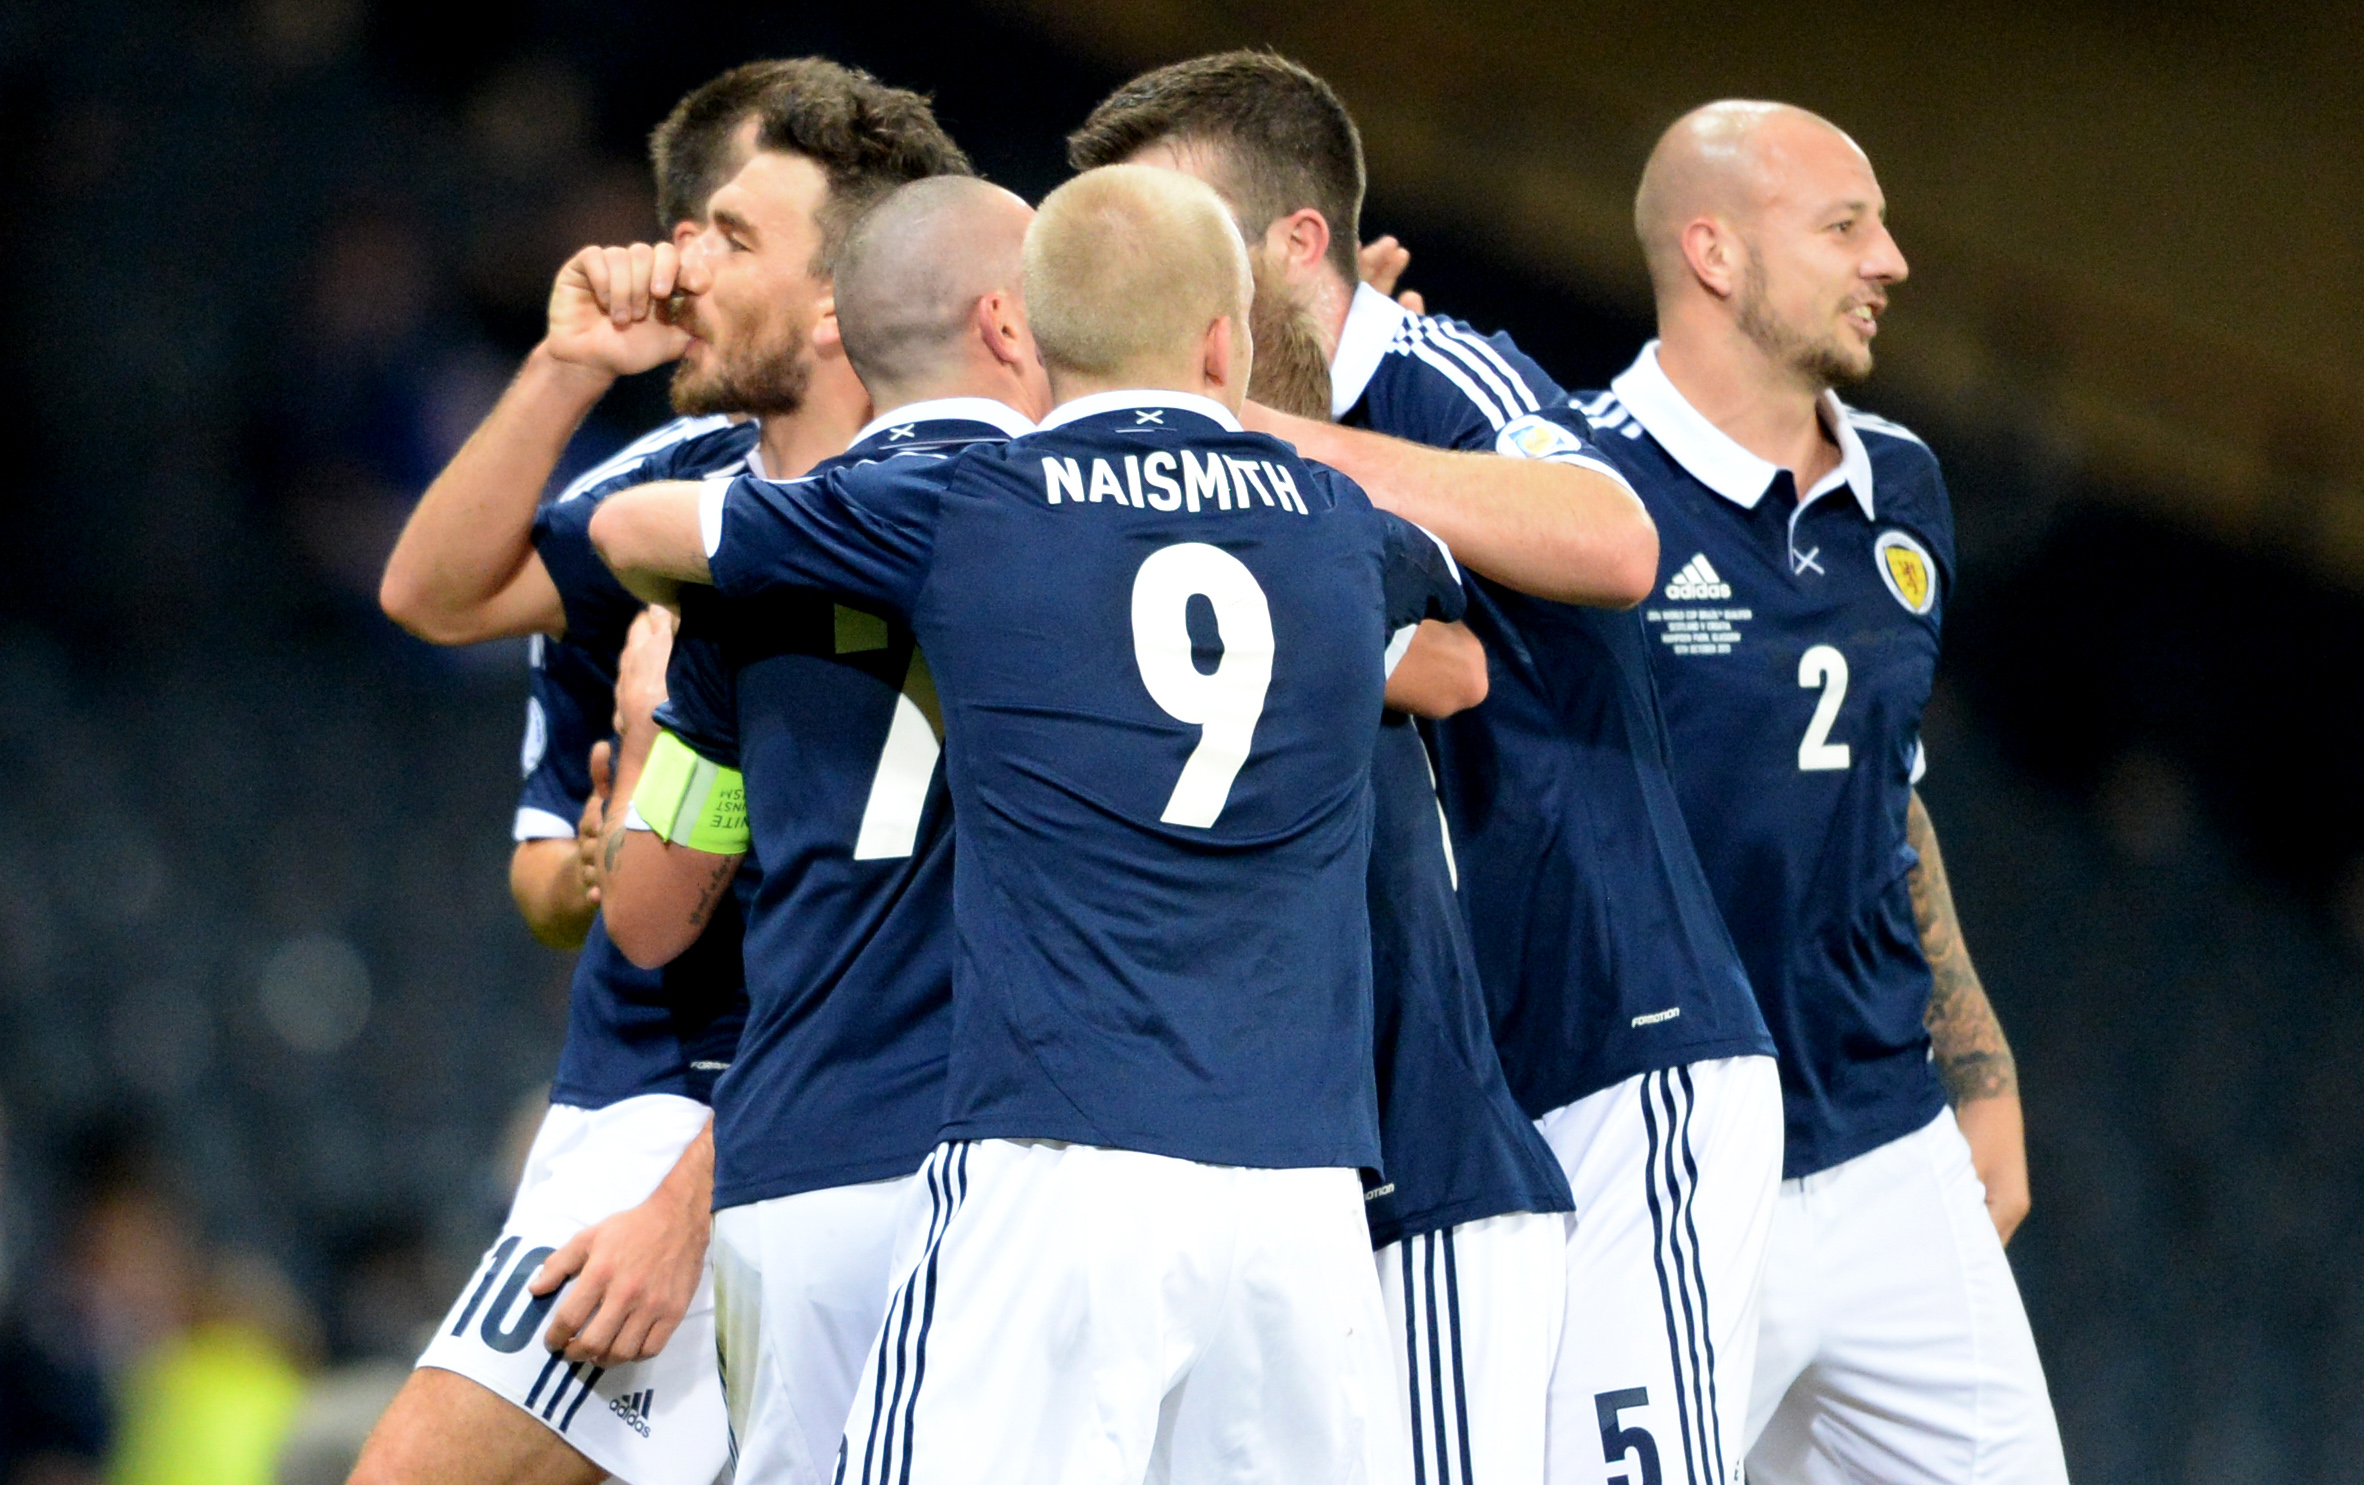 Scotland celebrate Snodgrass' goal.